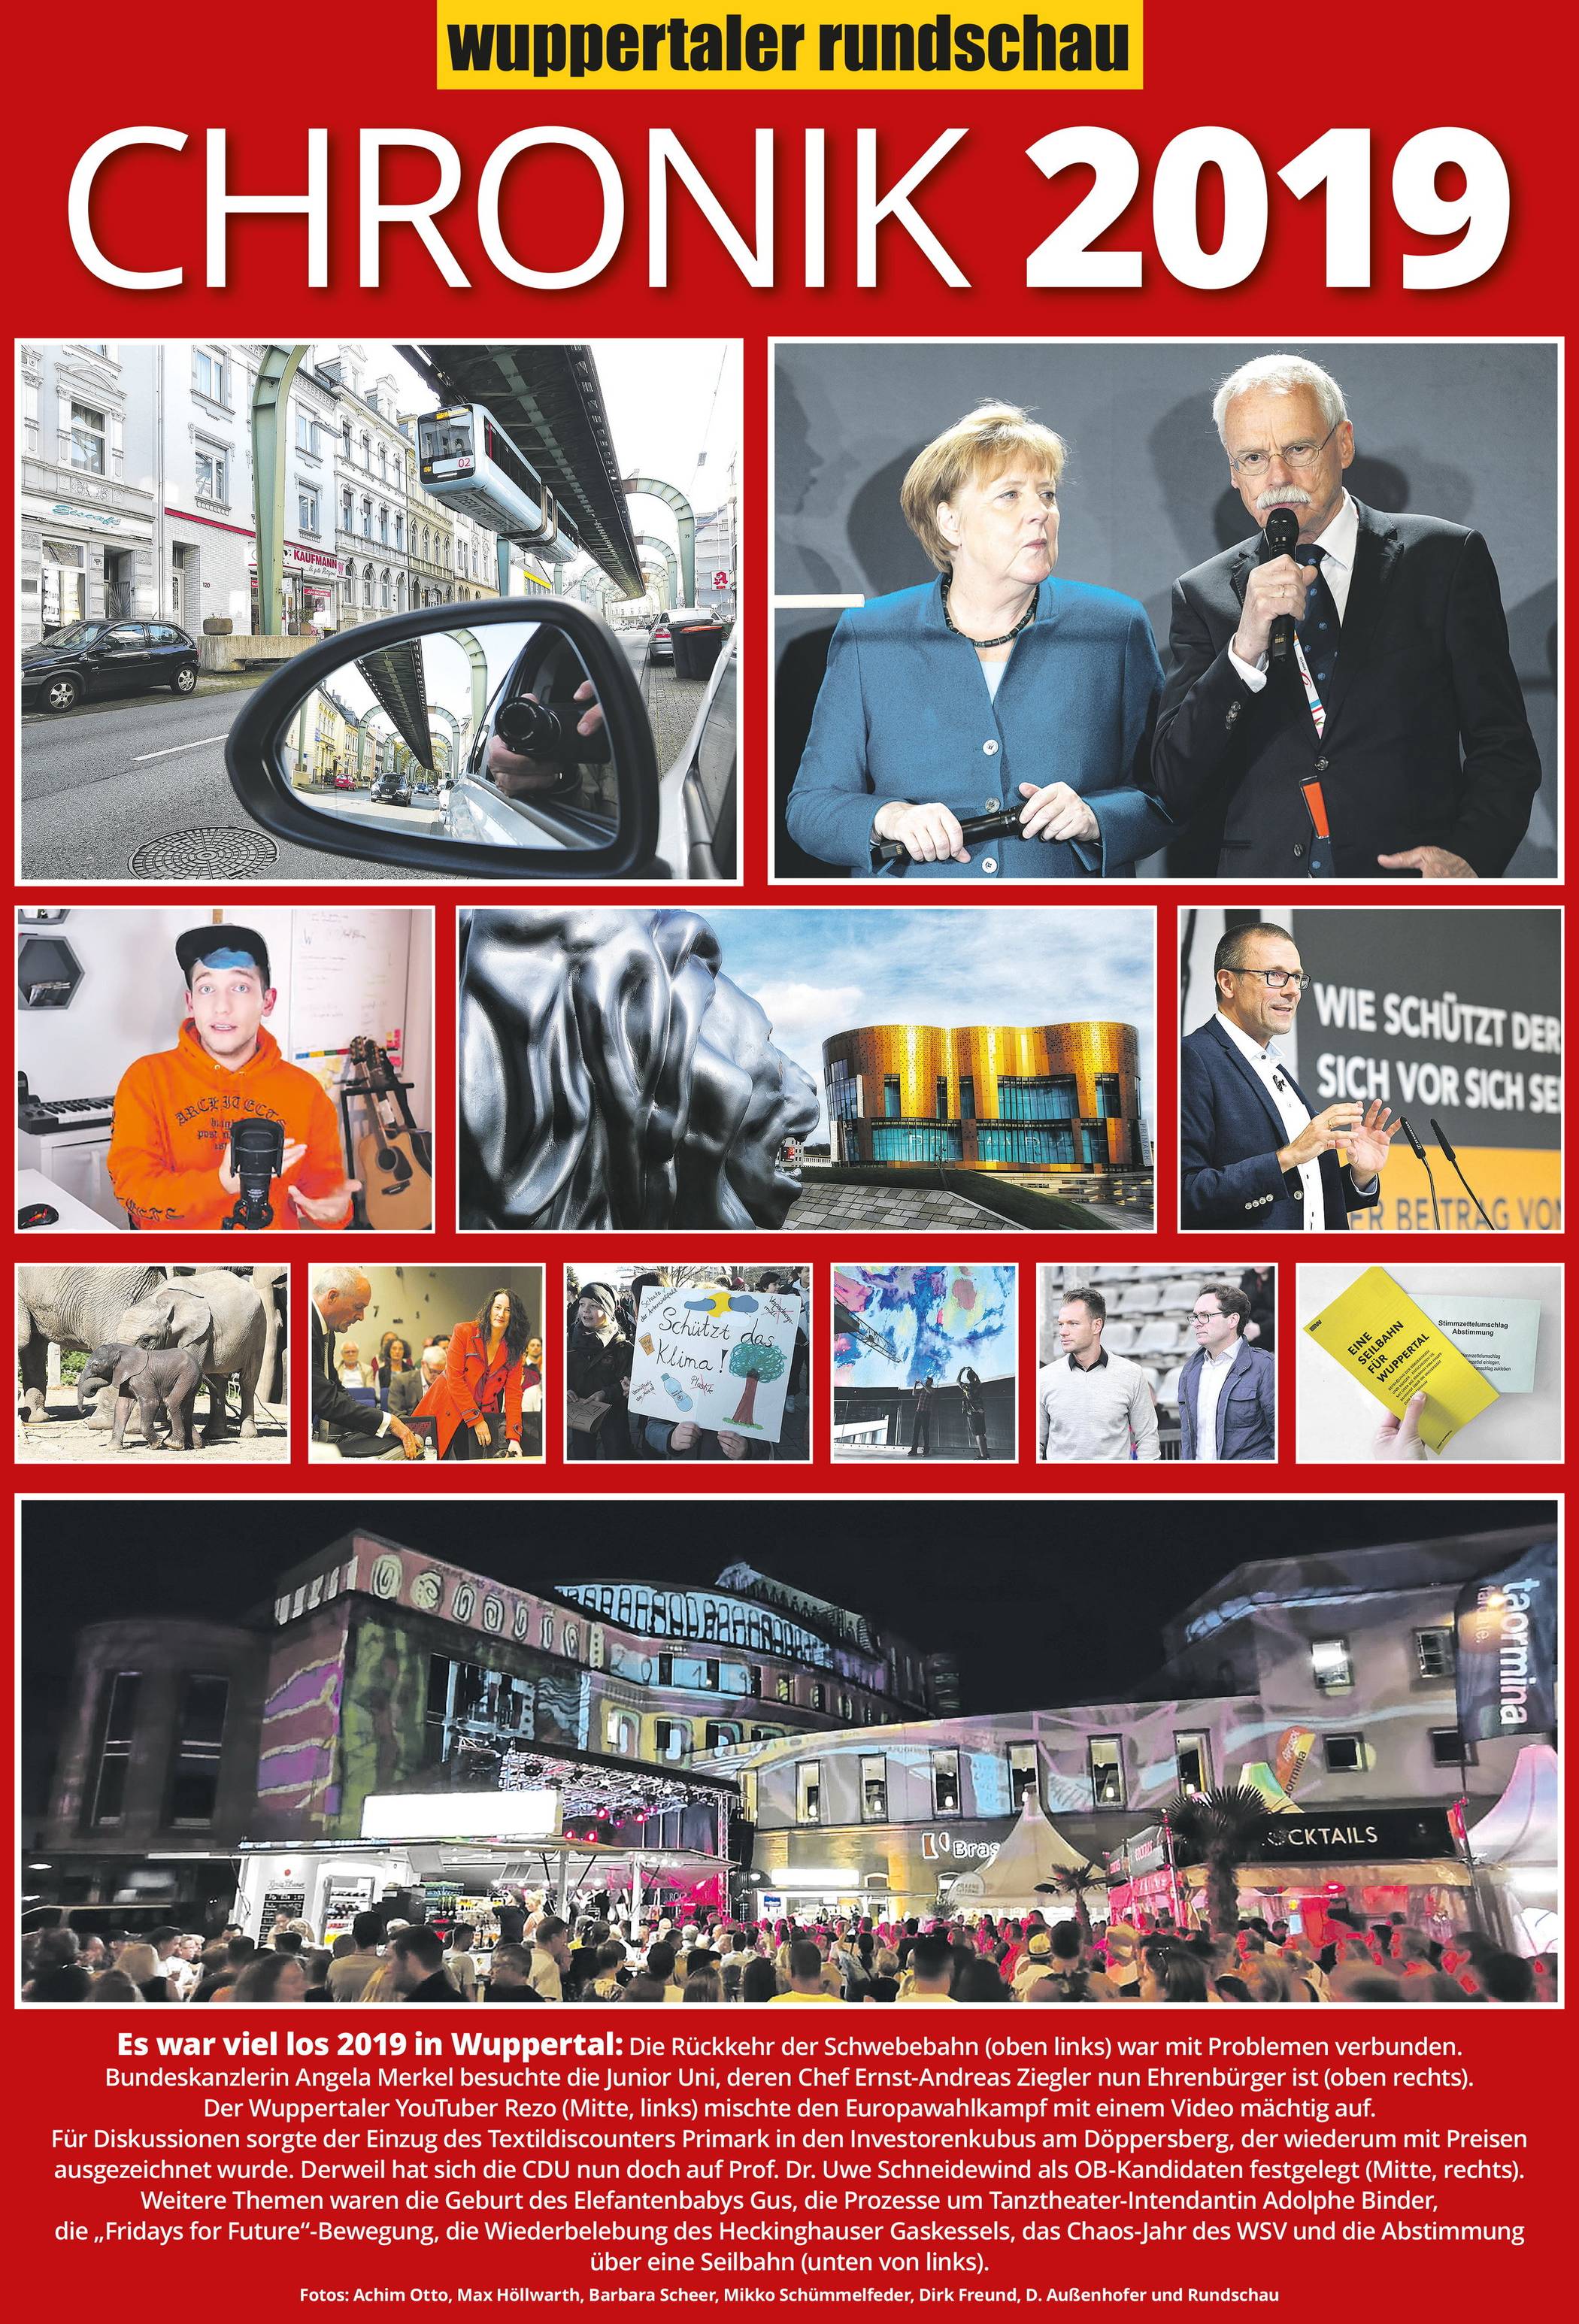 Wuppertals Cronik 2019: Z wie Zivilcourage